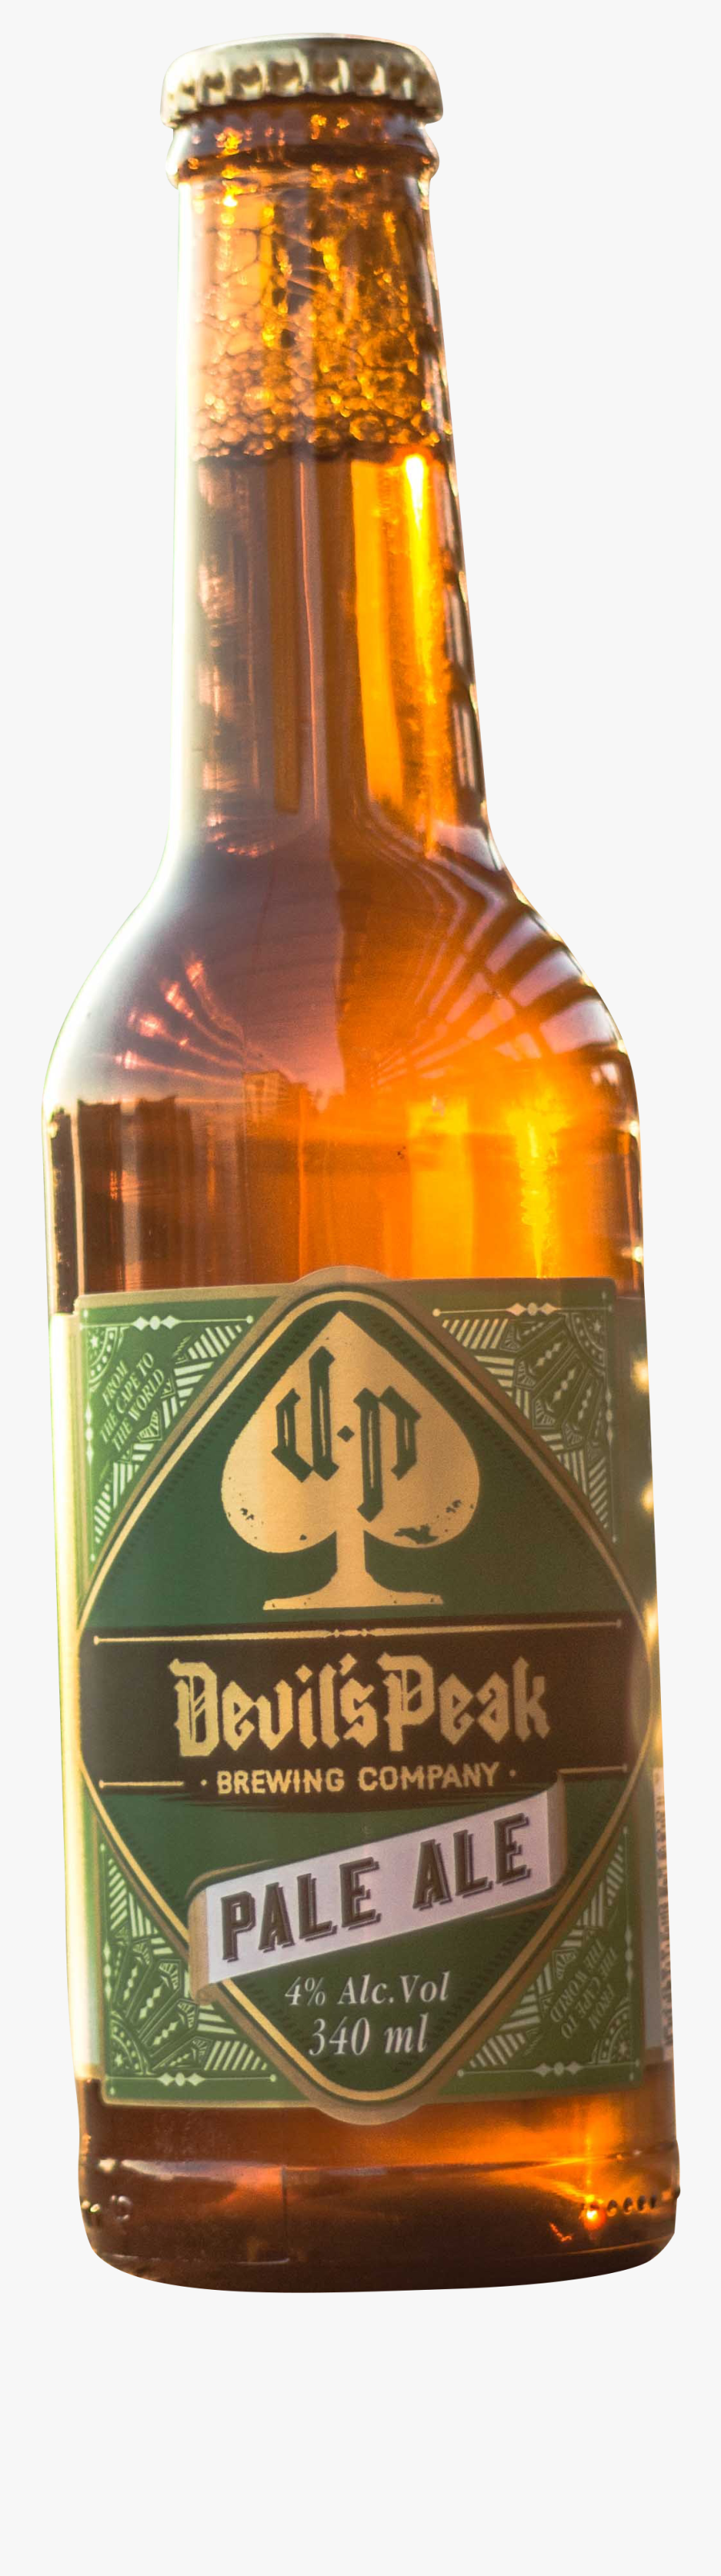 Beer Bottle Transparent Png - Beer Bottle, Transparent Clipart